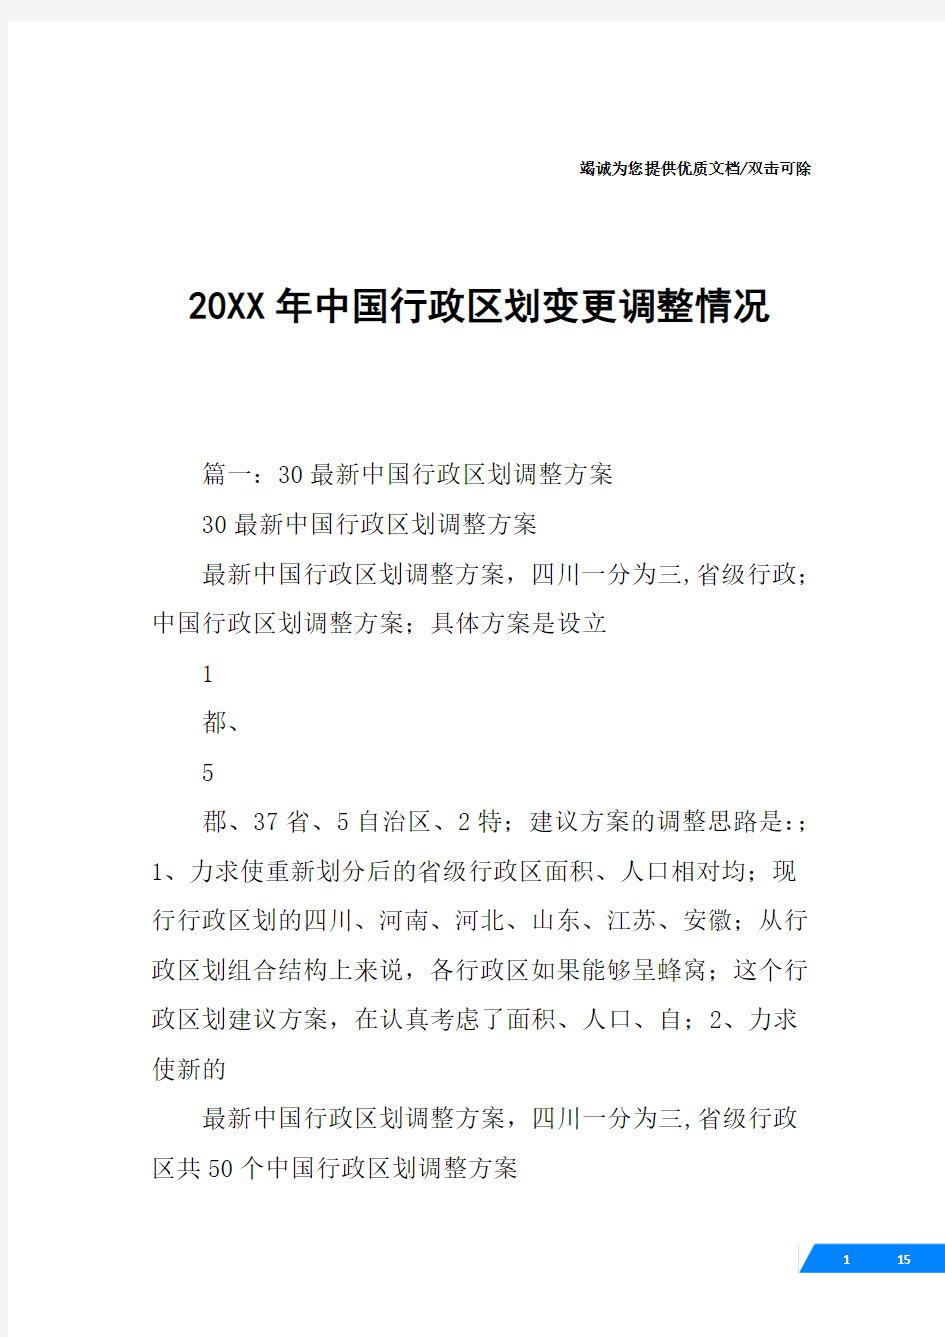 20XX年中国行政区划变更调整情况